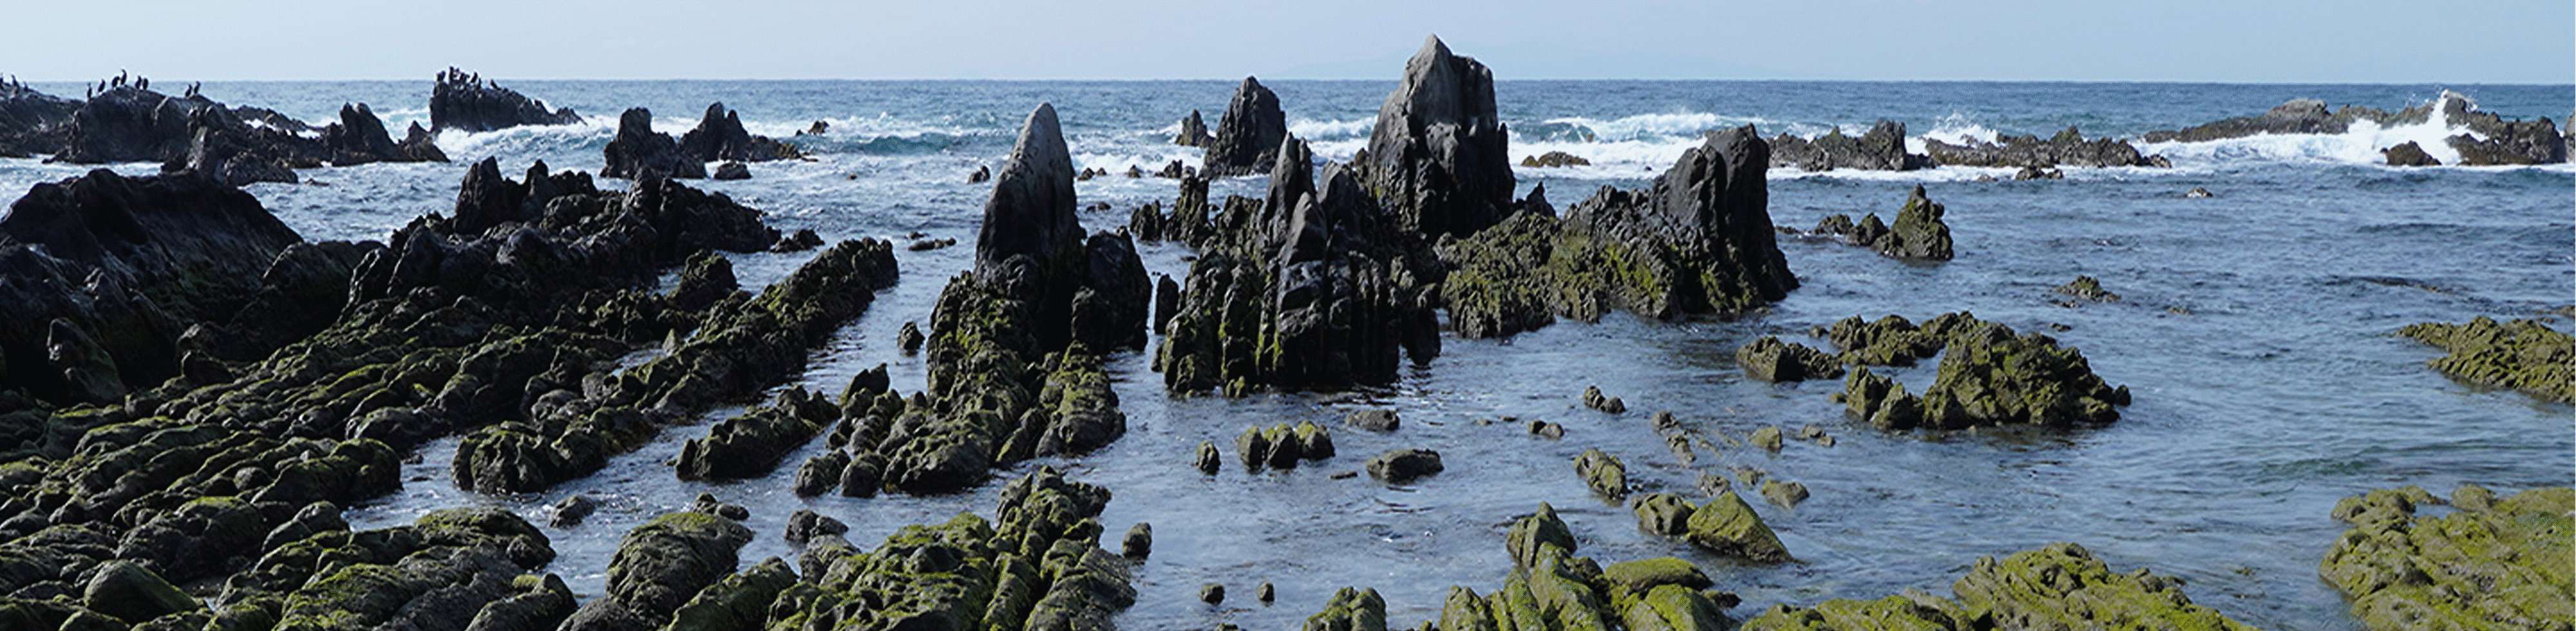 Imagen de formación de rocas costeras